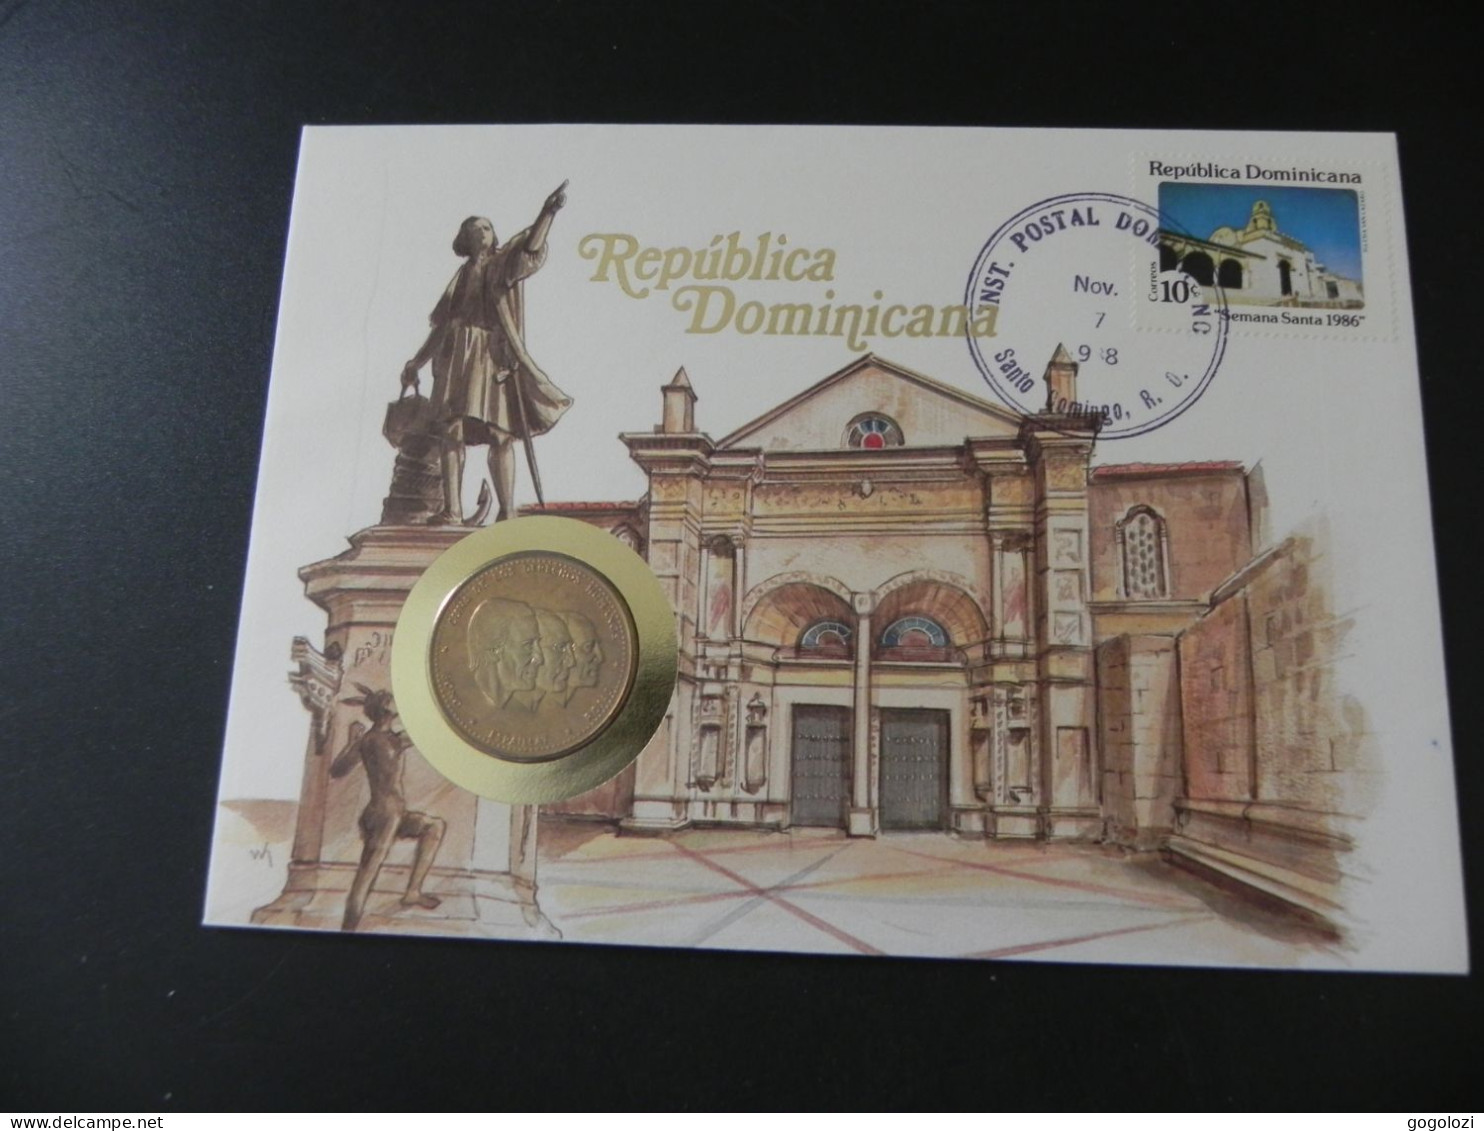 Dominican Republic 1/2 Peso 1983 - Cuna De Los Derechos Humanos - Bono Espaillat Rojas - Numis Letter 1988 - Dominicana